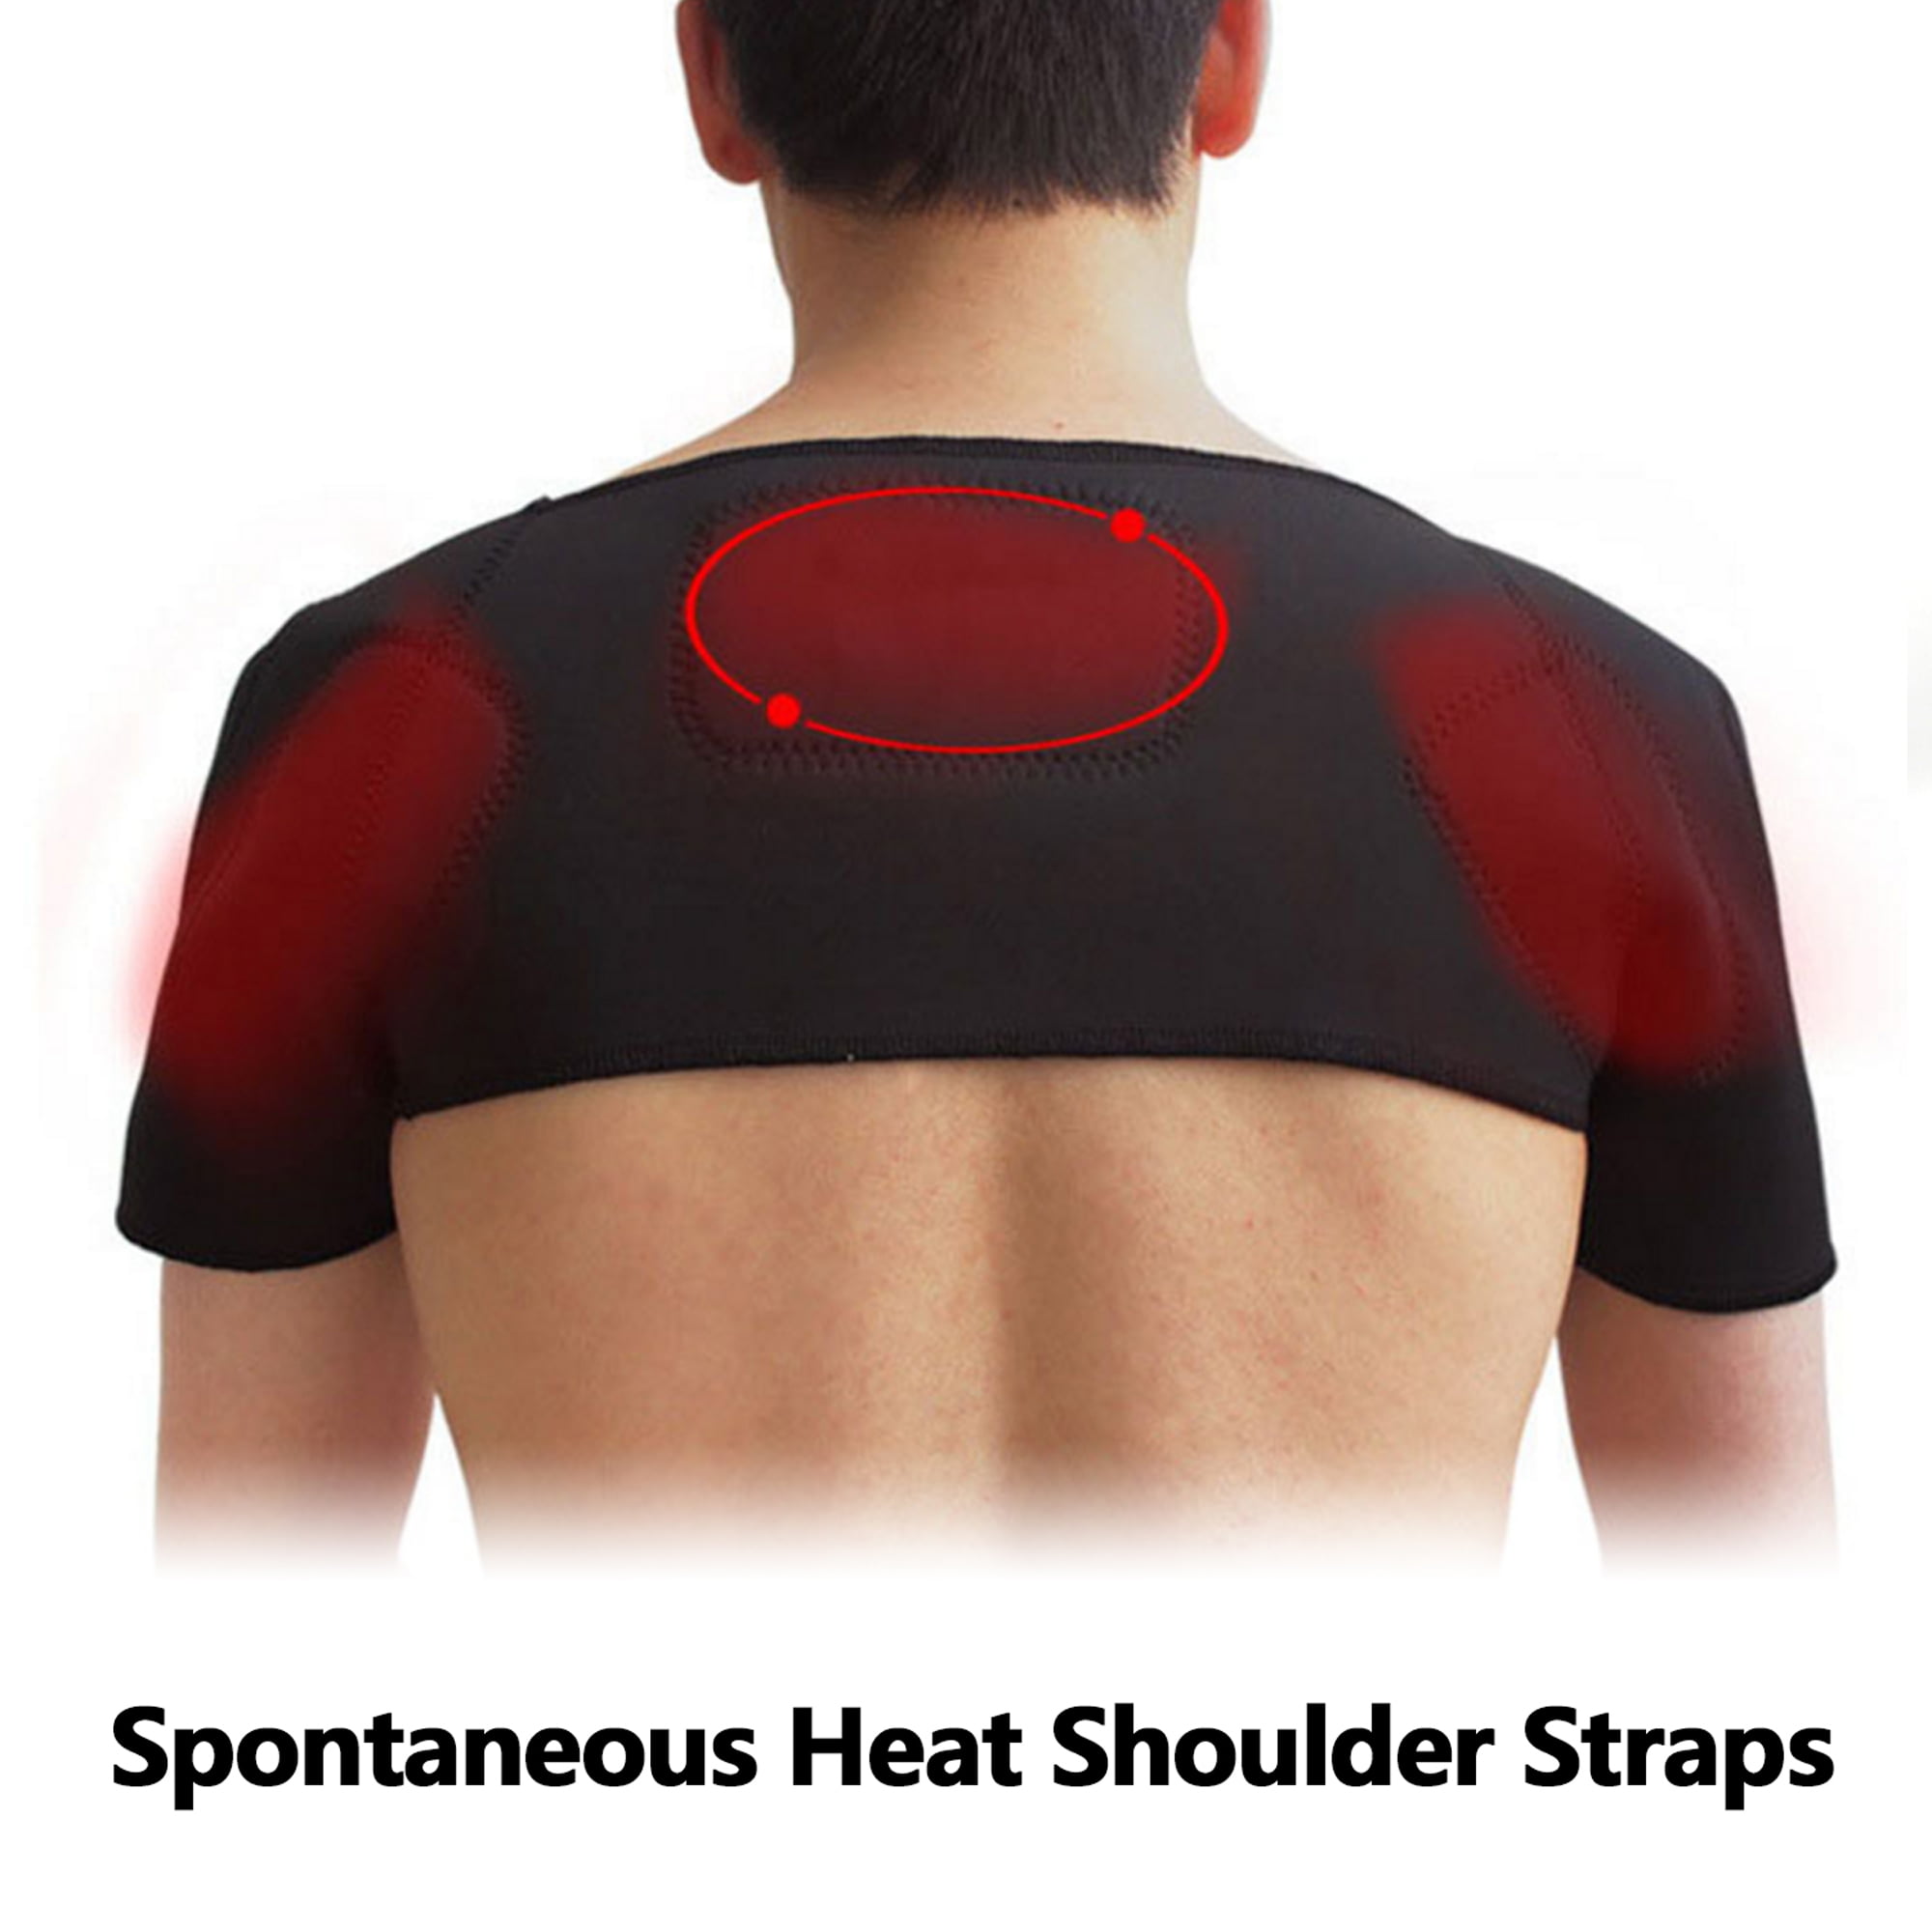 BRAND NEW Adjustable Neoprene Shoulder Support Brace Strap Belt For Pain Relief